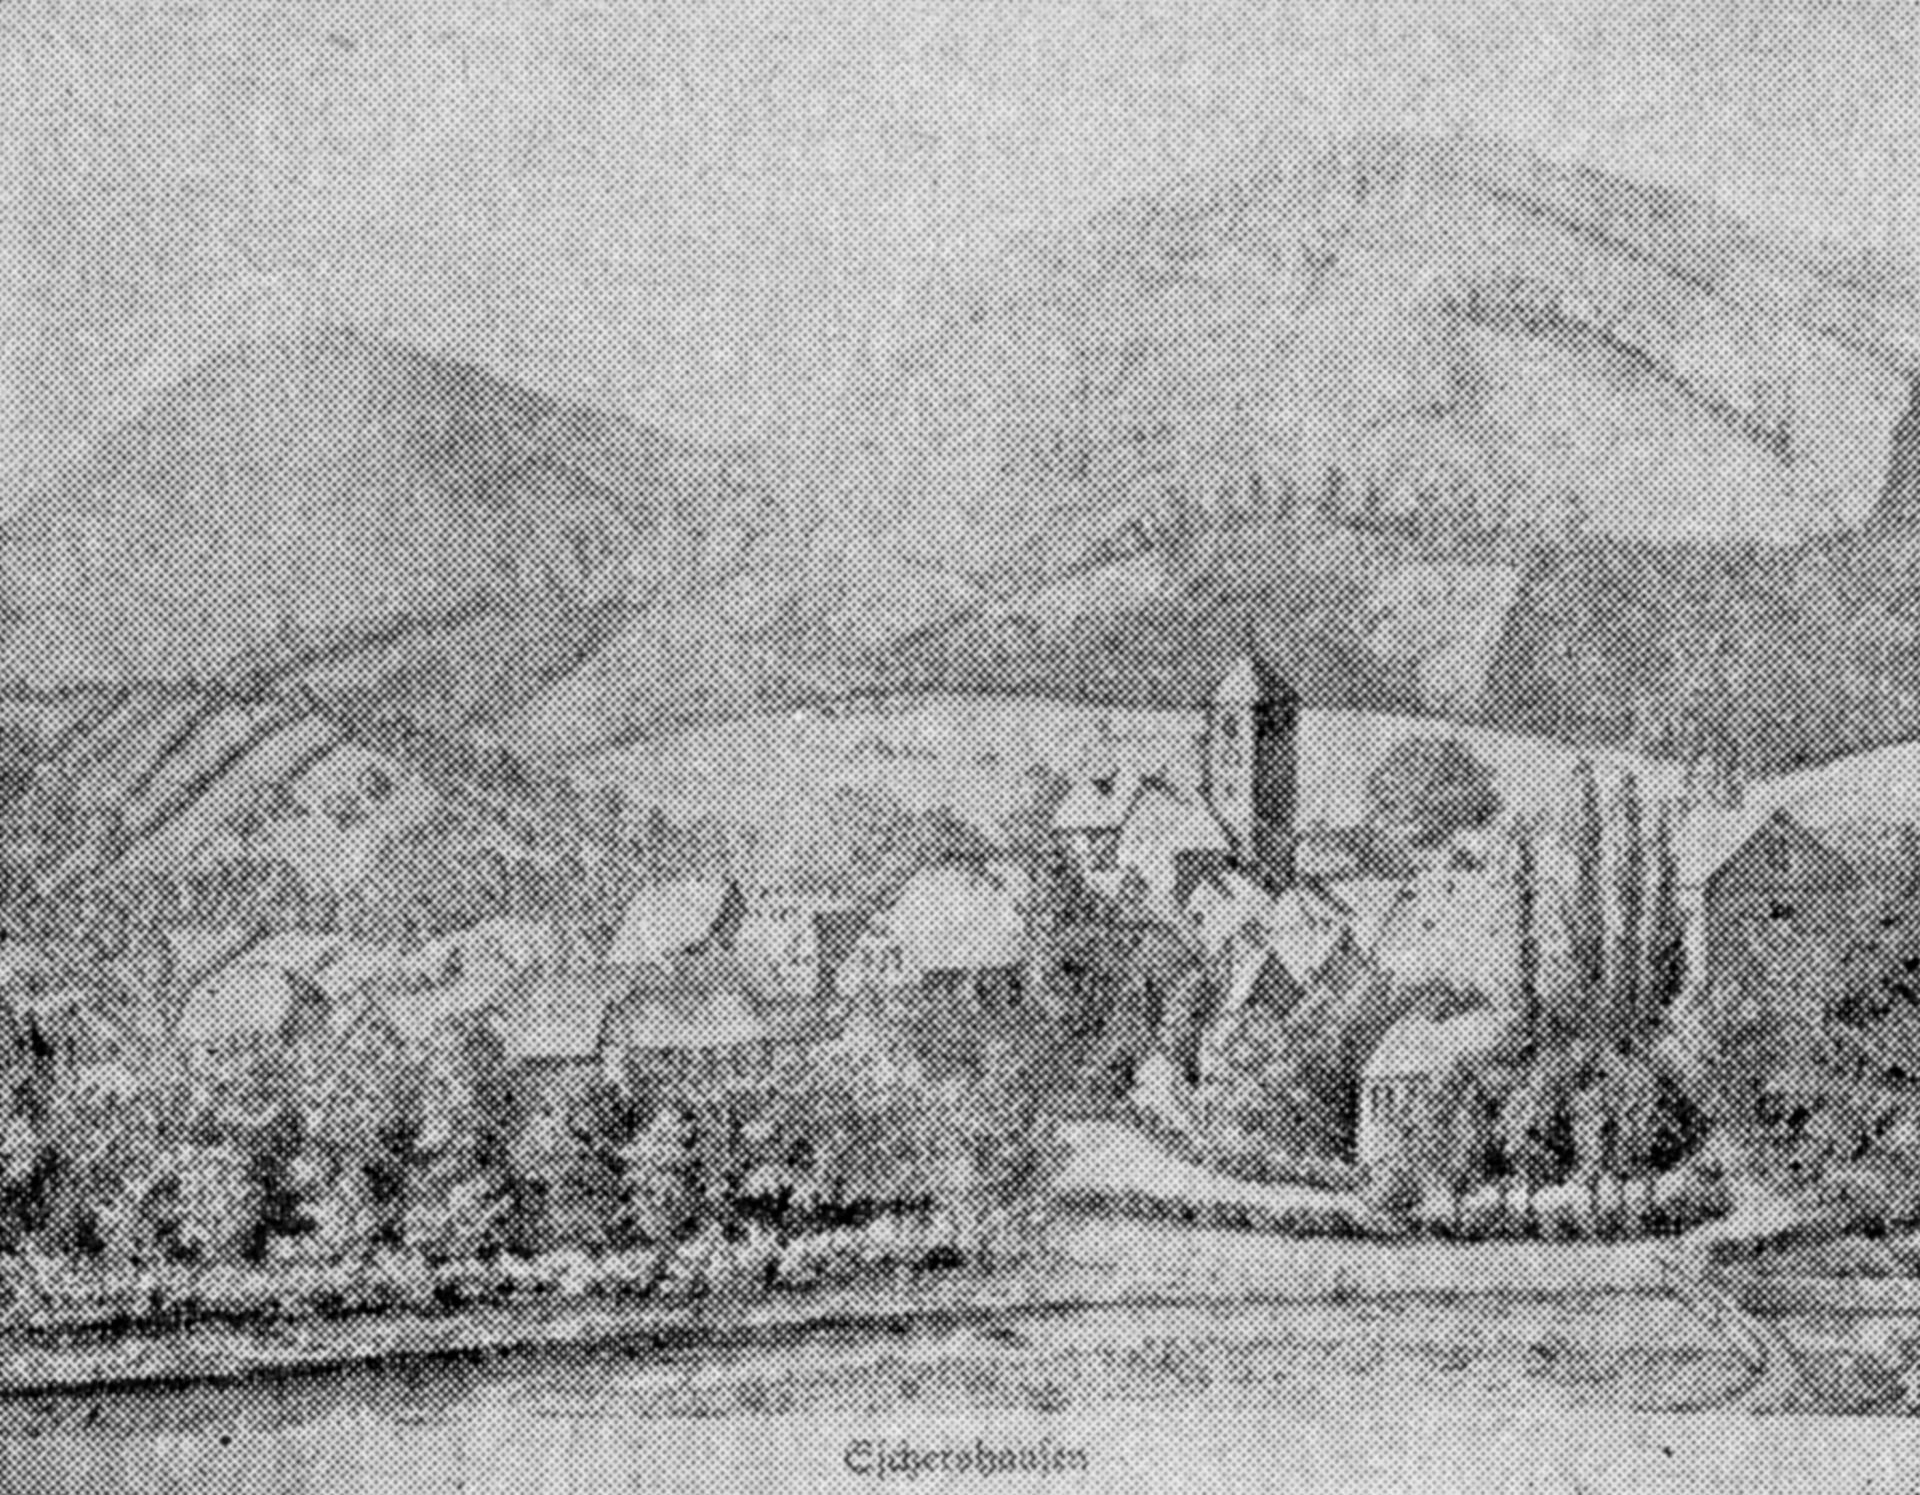 Bild von Eschershausen um 1870